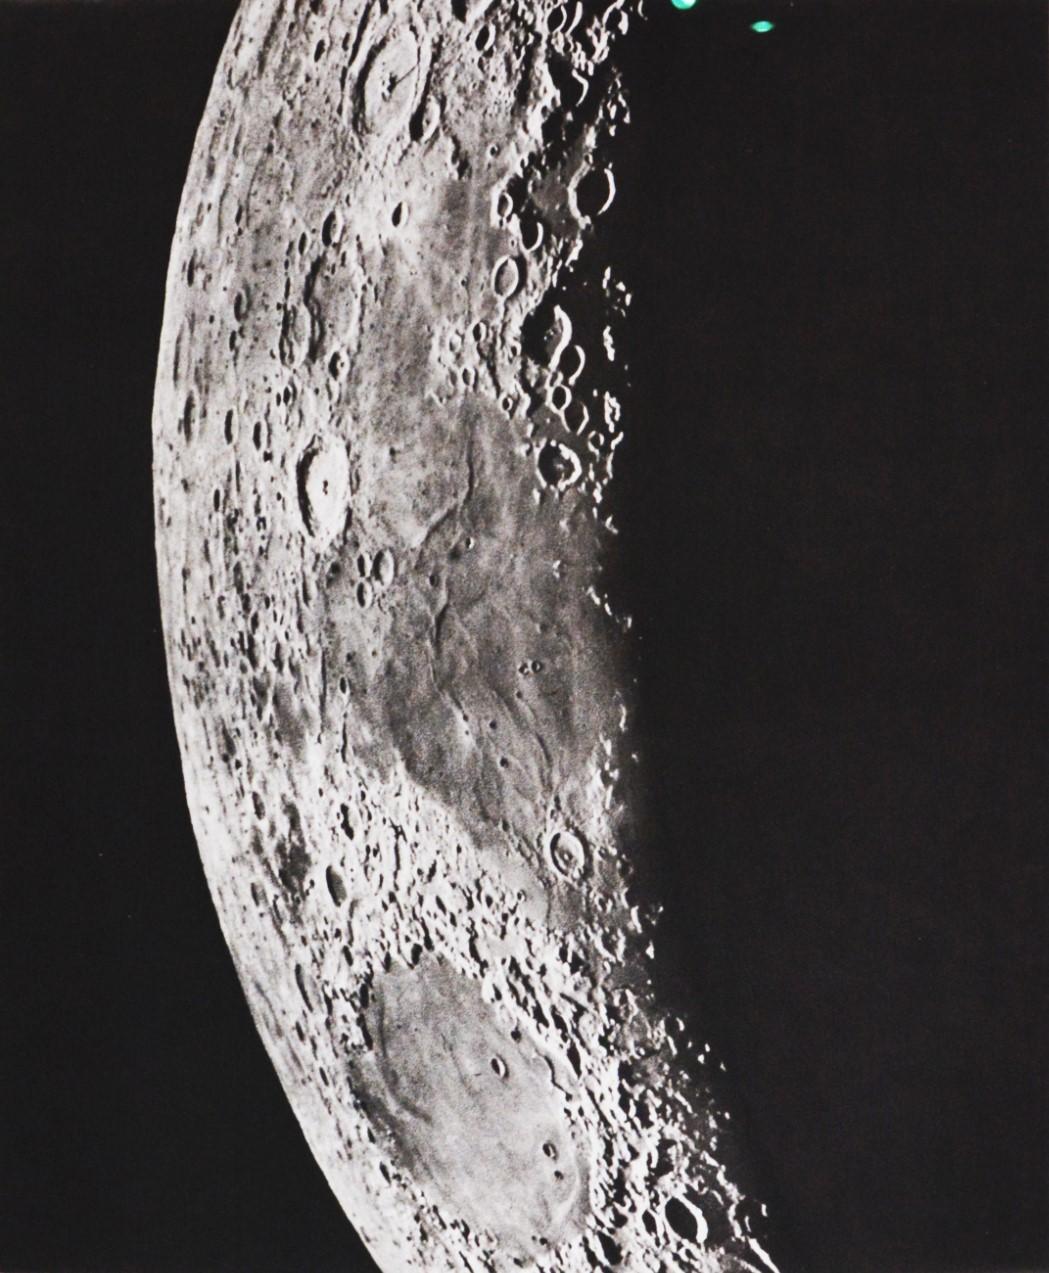 PETAVIUS_LANGRENUS_MER DES CRIS - Héliogravure of the Moon's Surface - Naturalistic Photograph by Moritz Loewy; Pierre-Henry Puiseux